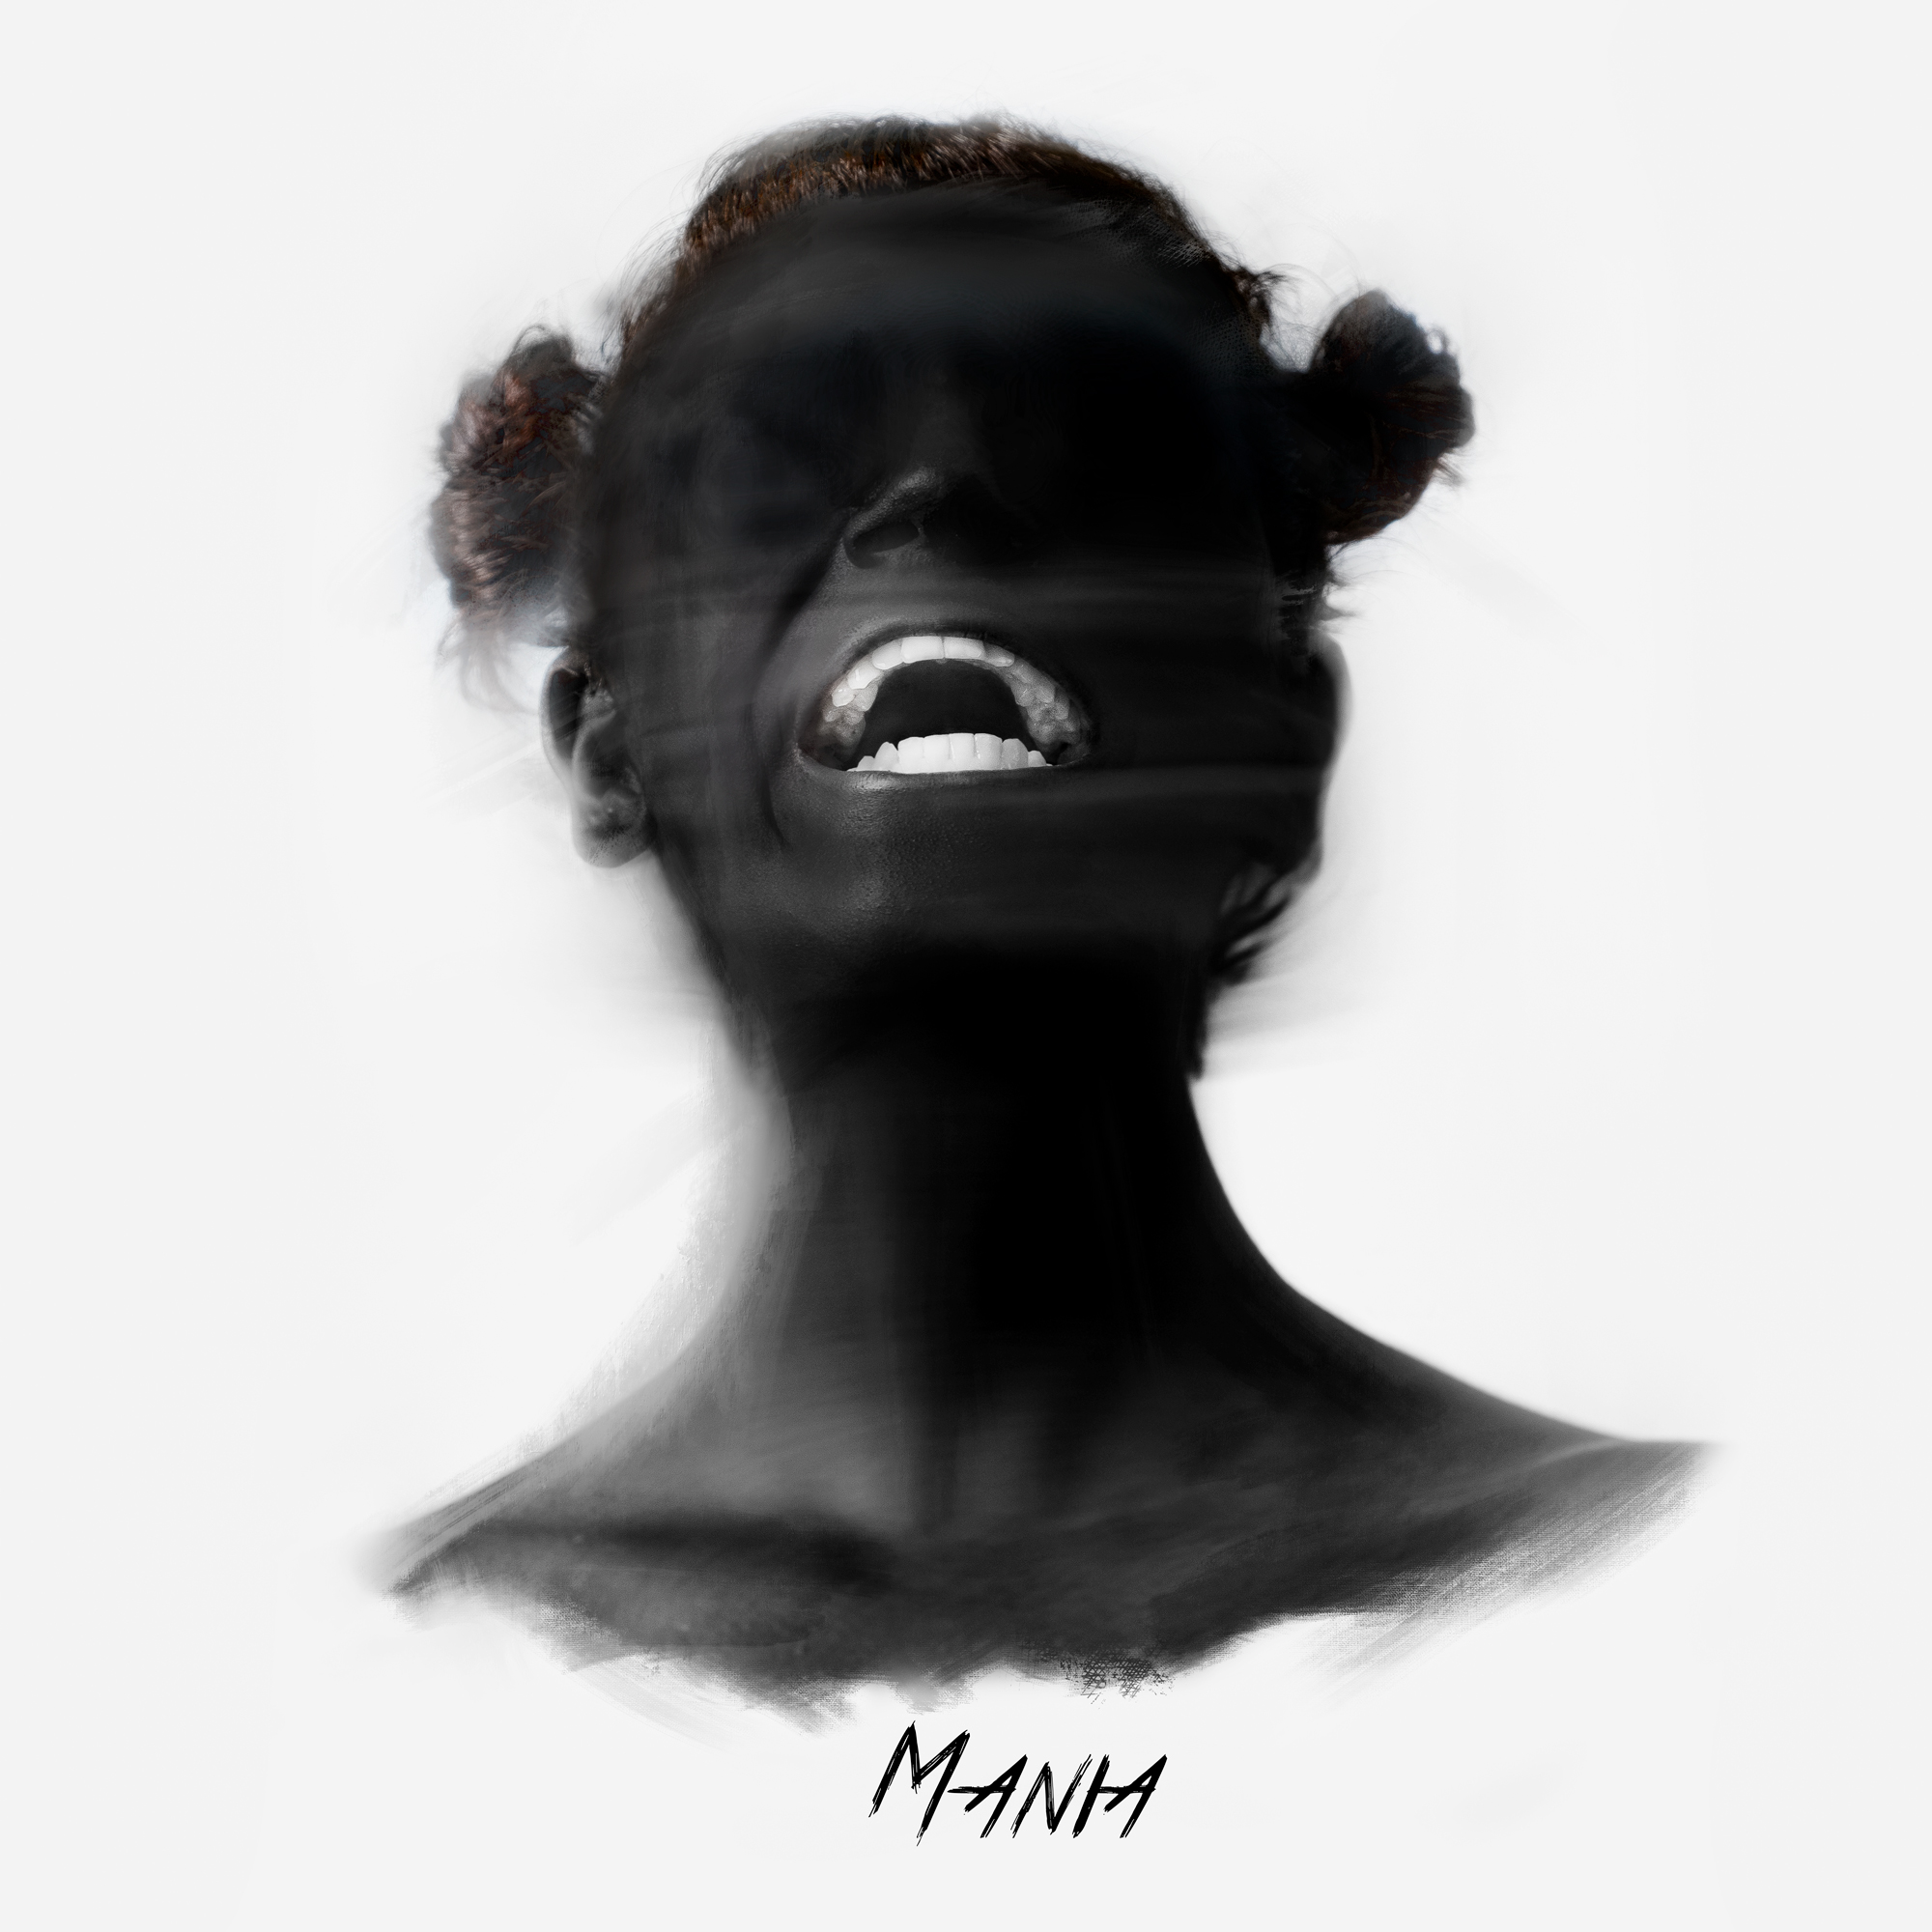 Al momento stai visualizzando “Mania”, il primo album di Oneiroi